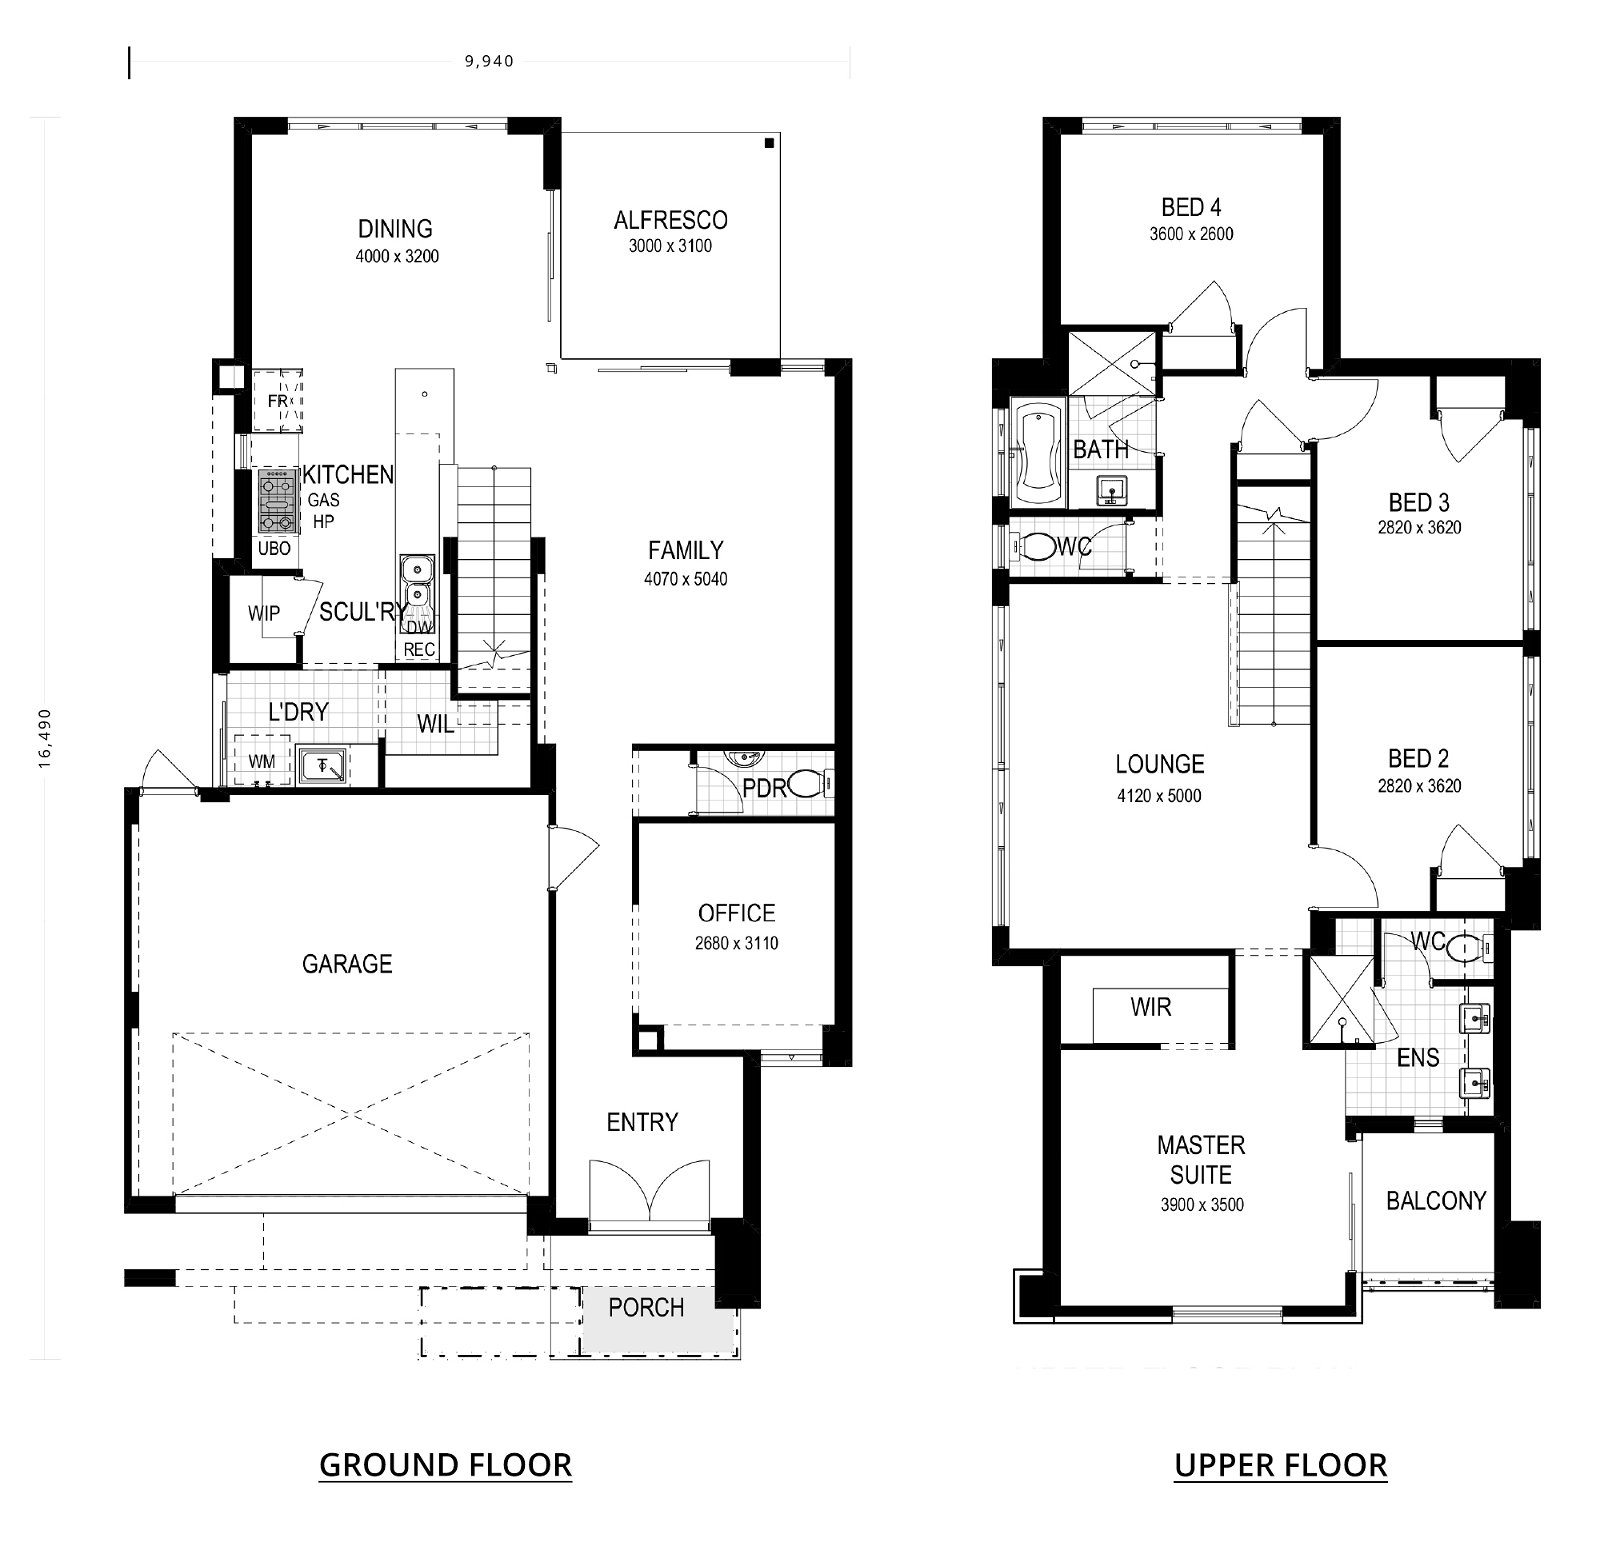 Residential Attitudes - Full House - Floorplan - Full House Floorplan Website 2